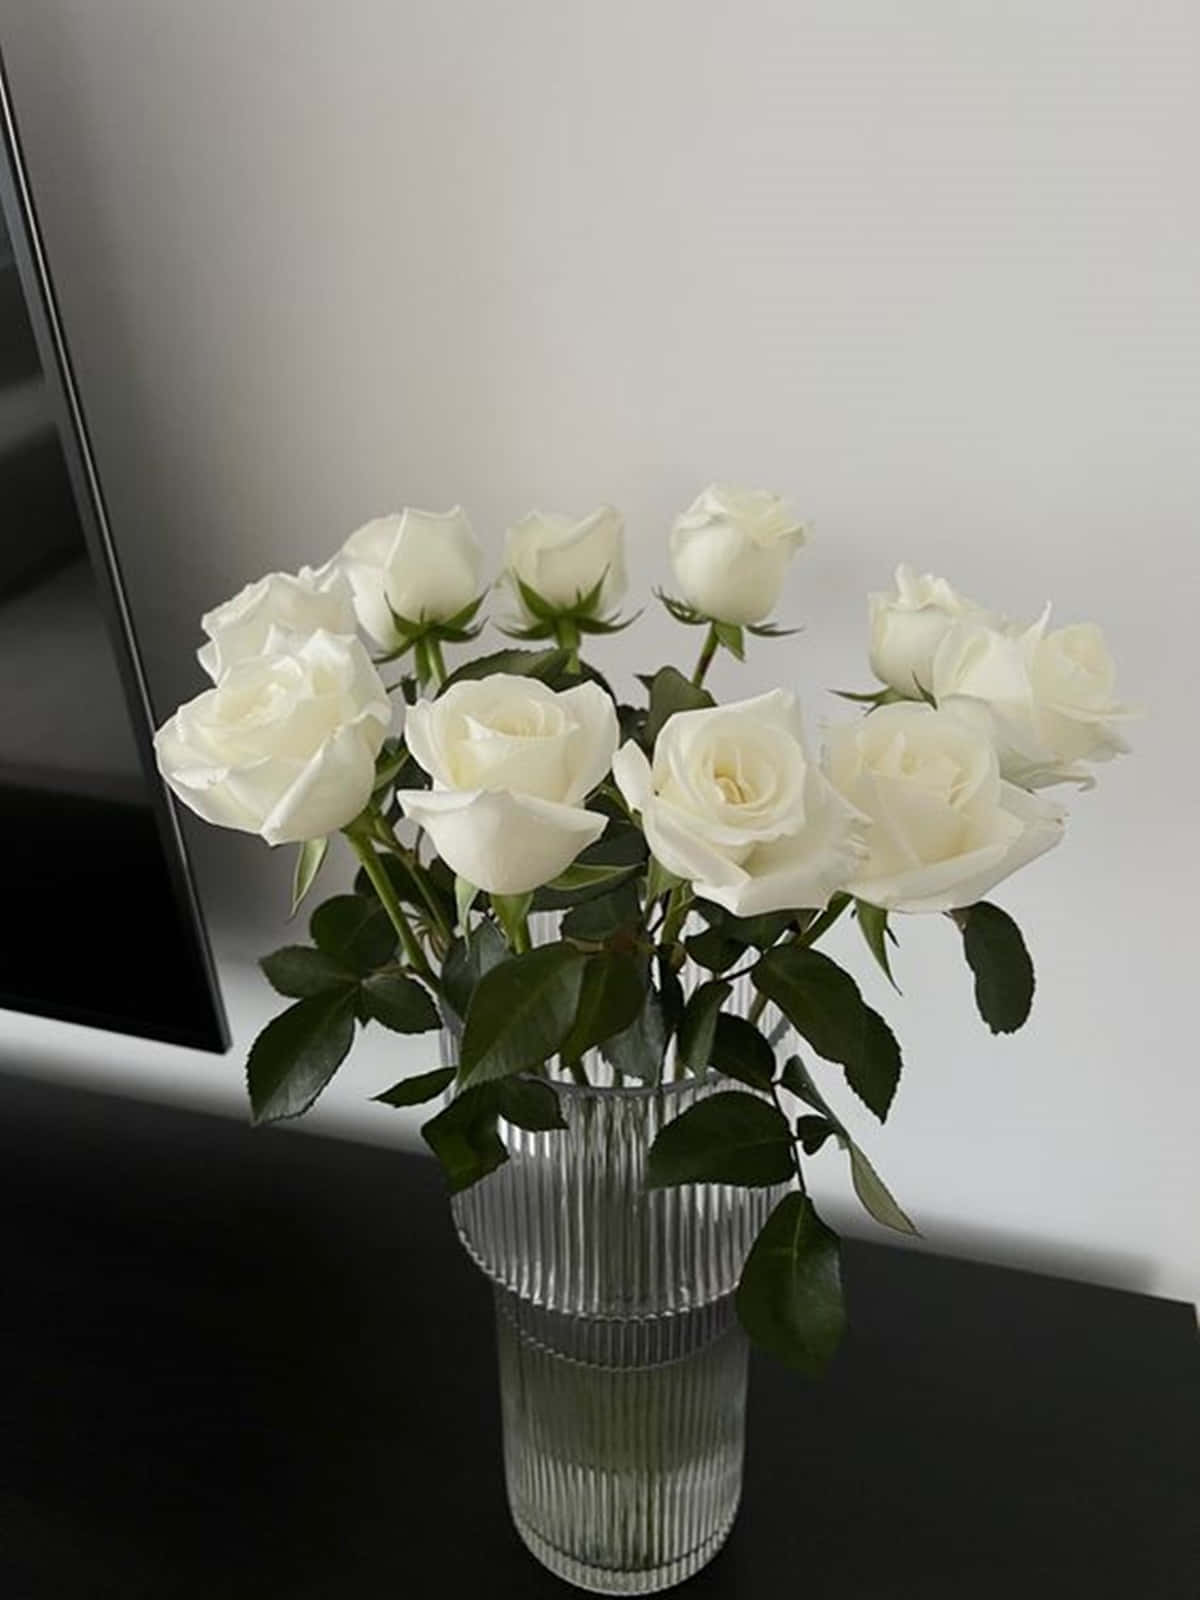 Einezierliche Weiße Rose Zeigt Ihre Schönheit Und Eleganz. Wallpaper